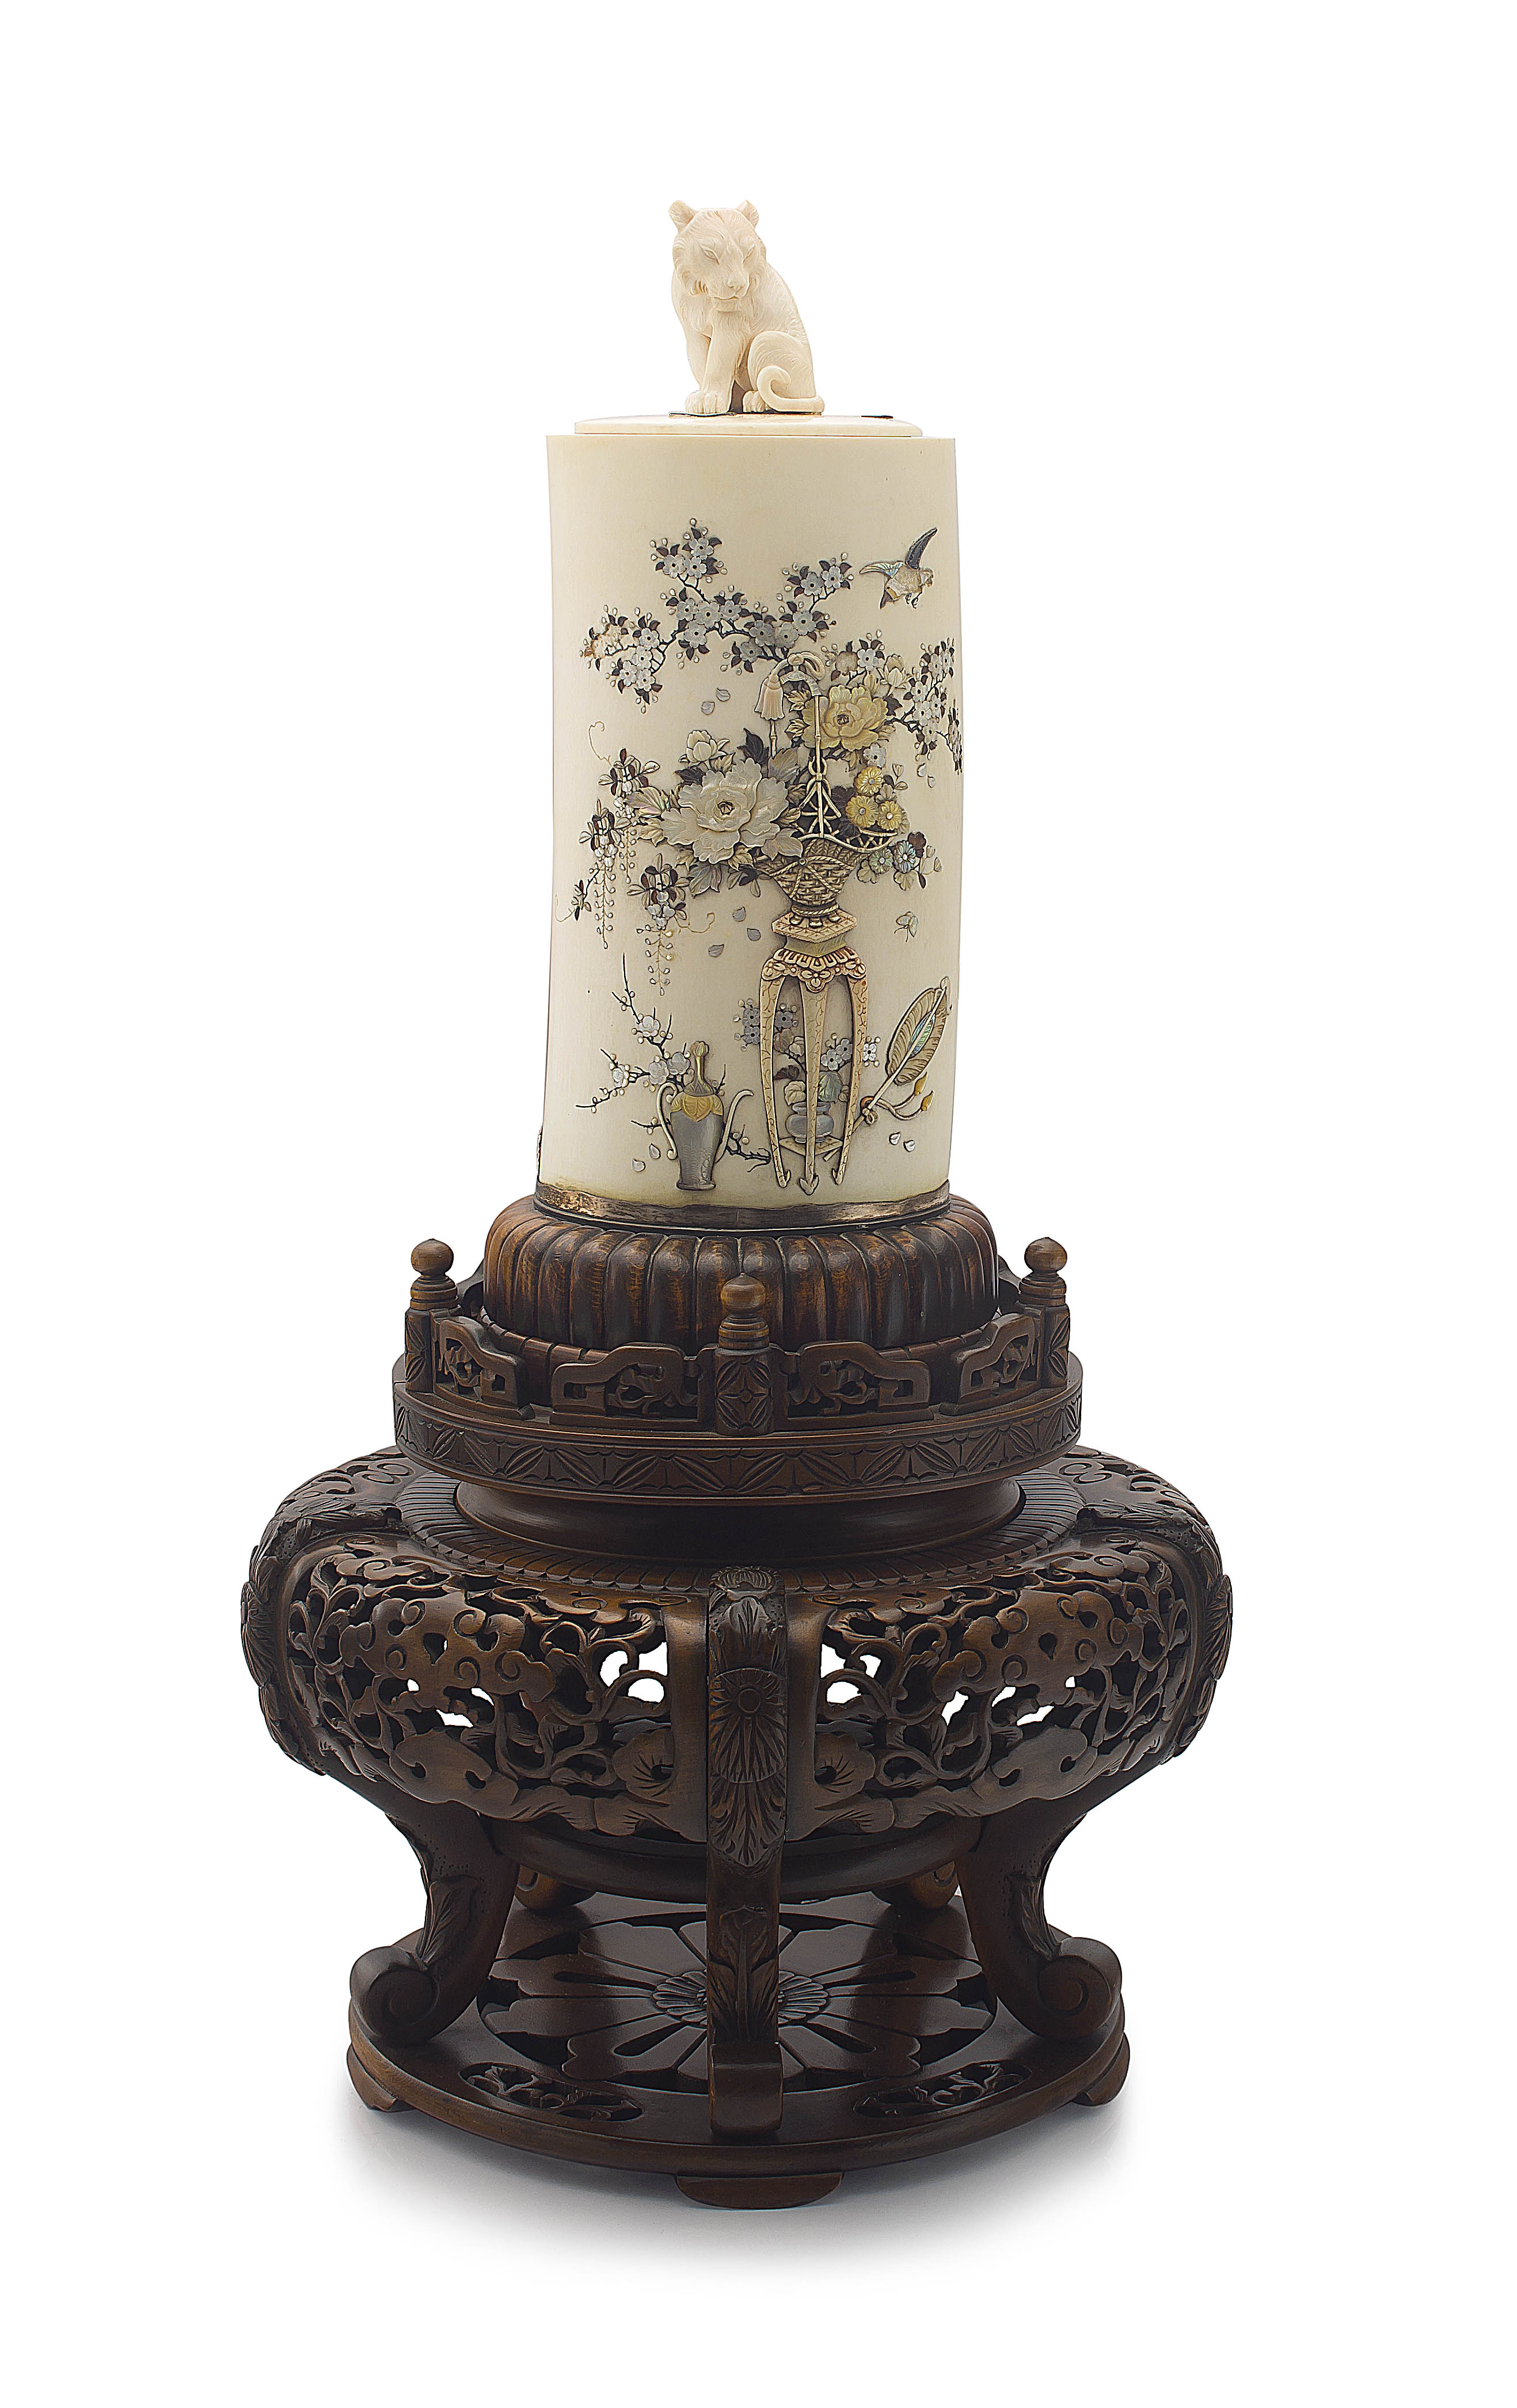 A Japanese Shibayama style inlaid ivory tusk vase, Meiji period, 1868-1912